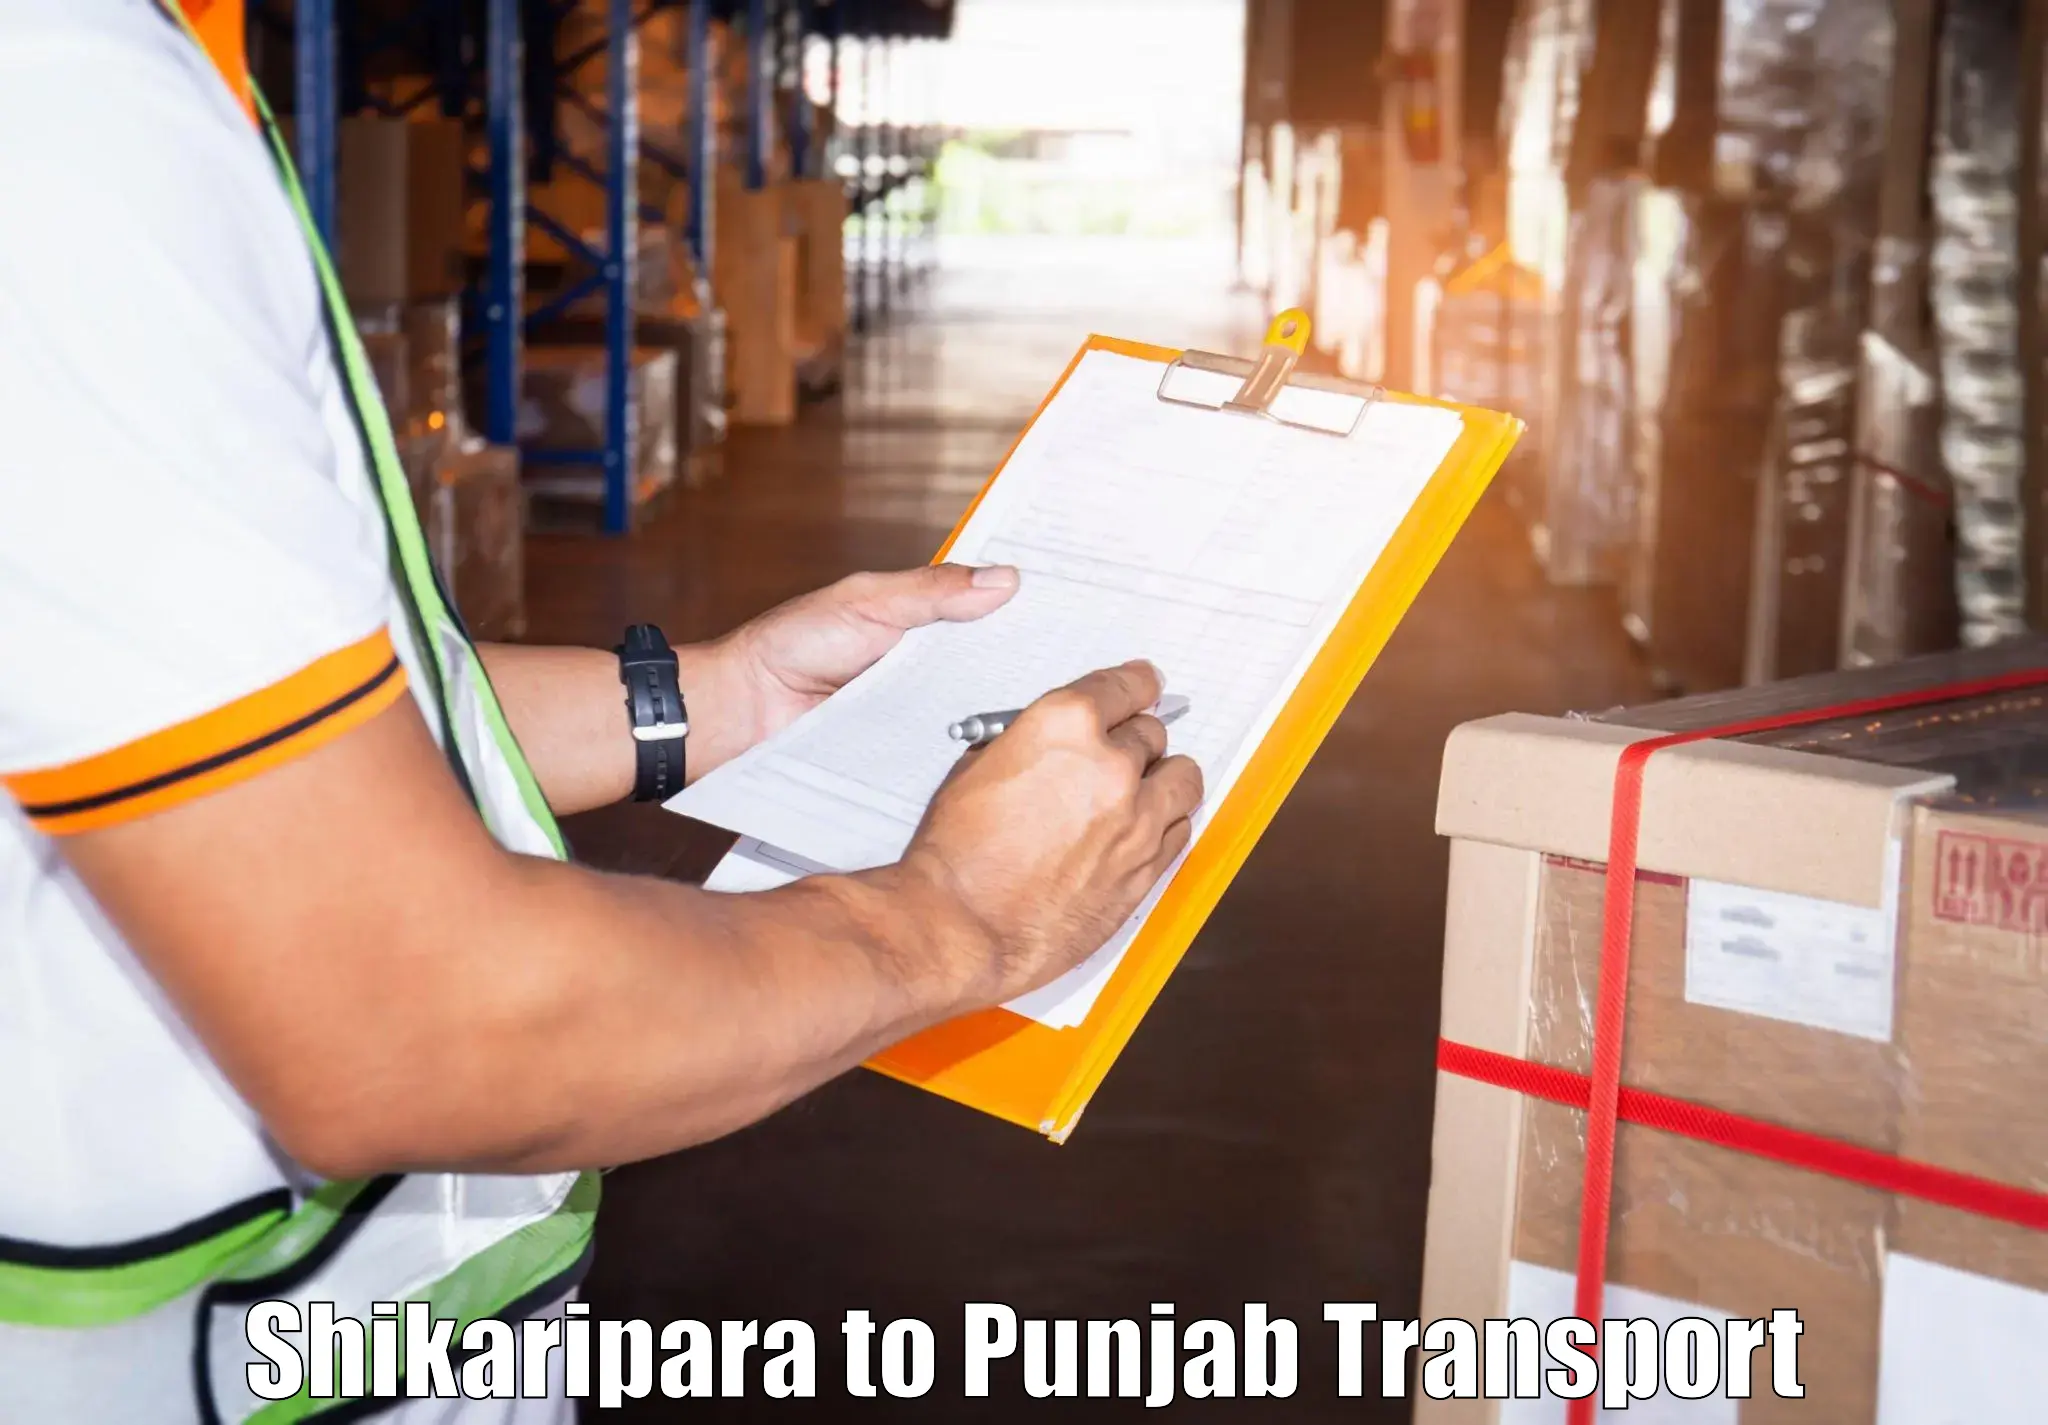 Online transport booking in Shikaripara to Fatehgarh Sahib